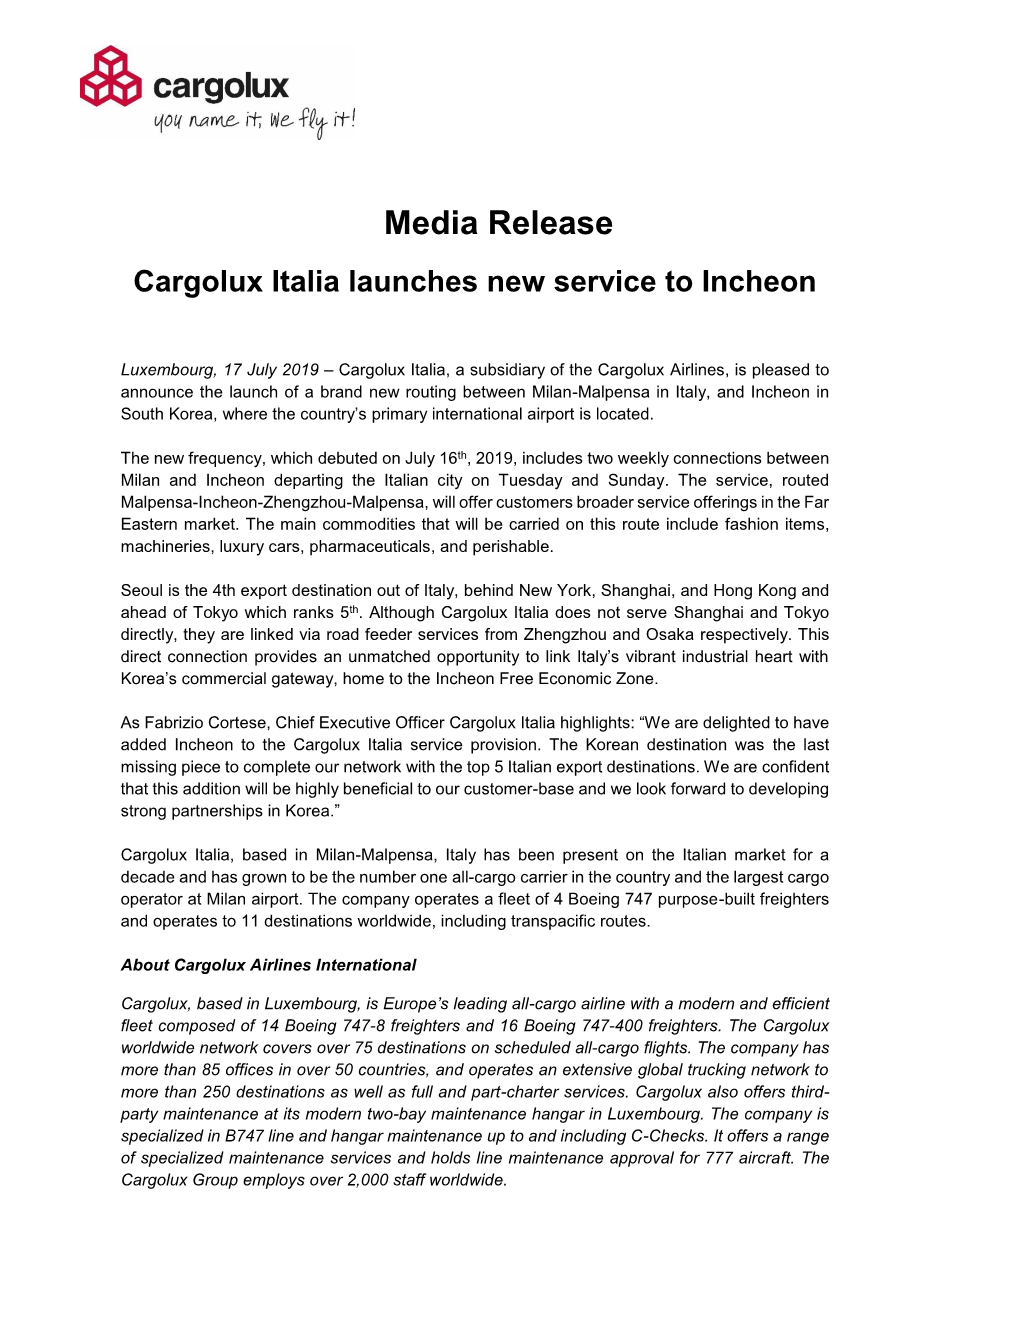 Media Release Cargolux Italia Launches New Service to Incheon